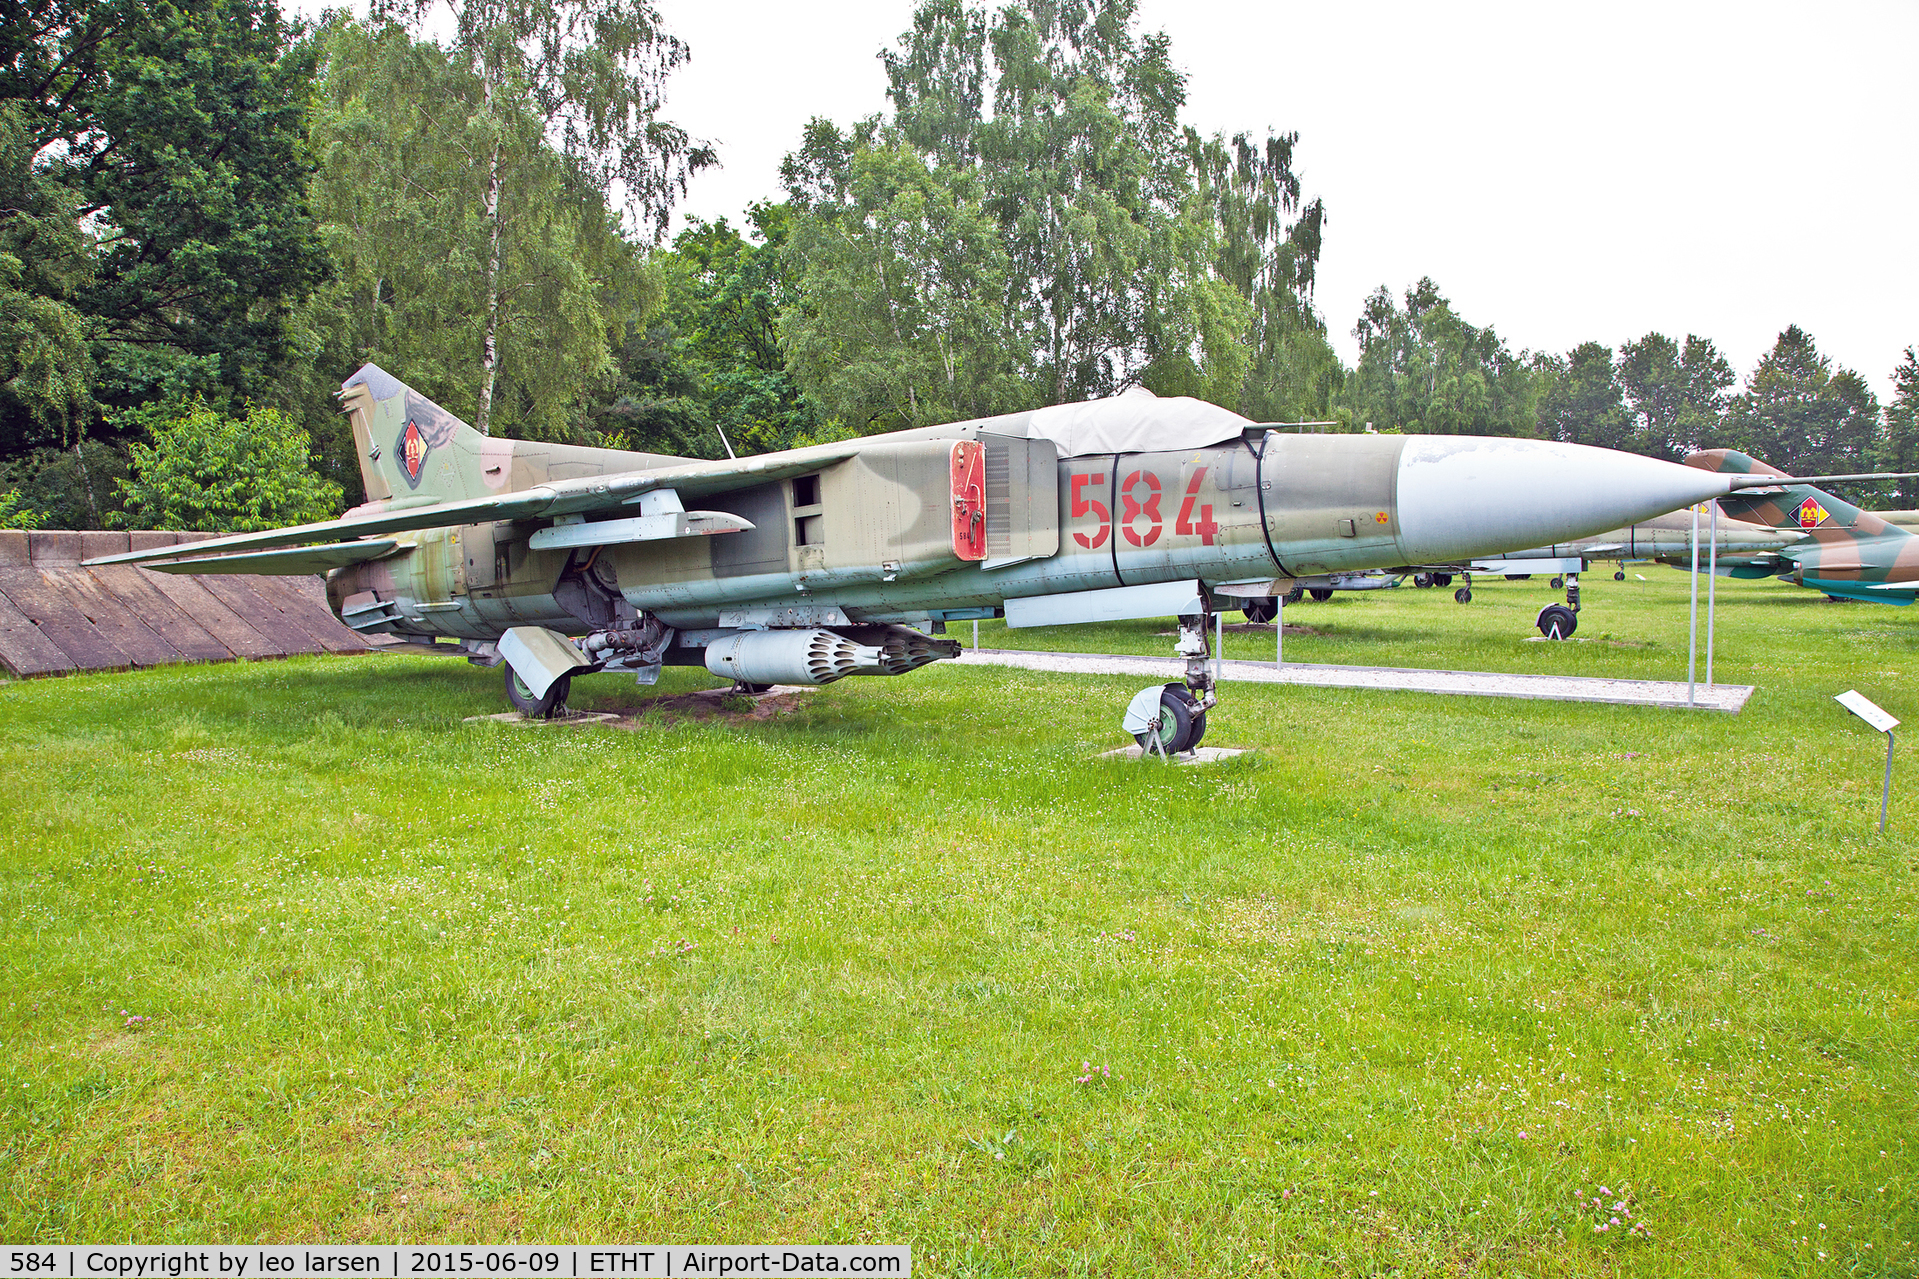 584, 1978 Mikoyan-Gurevich MiG-23MF C/N 03902 13098, Flugplatzmusuum Cottbus 9.6.15